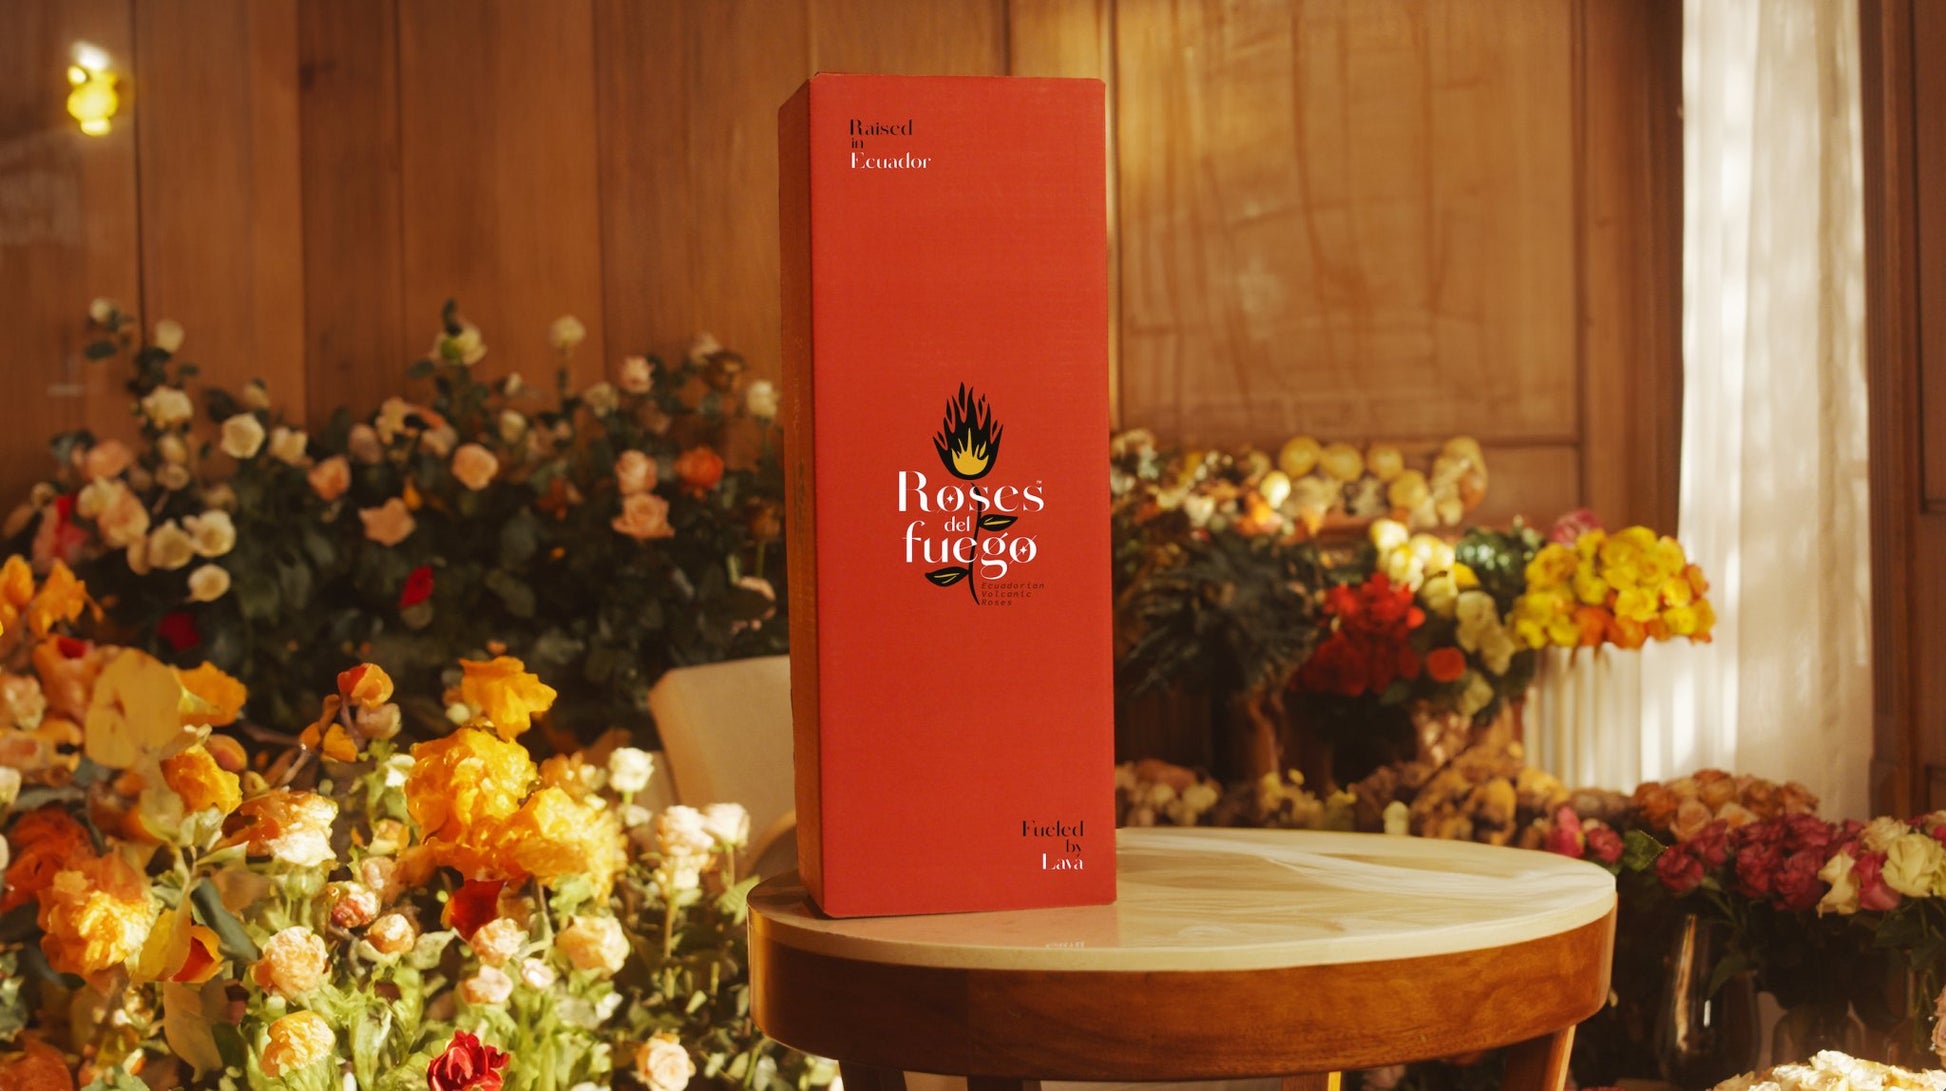 Hot Combination 50 #4 - Roses del fuego